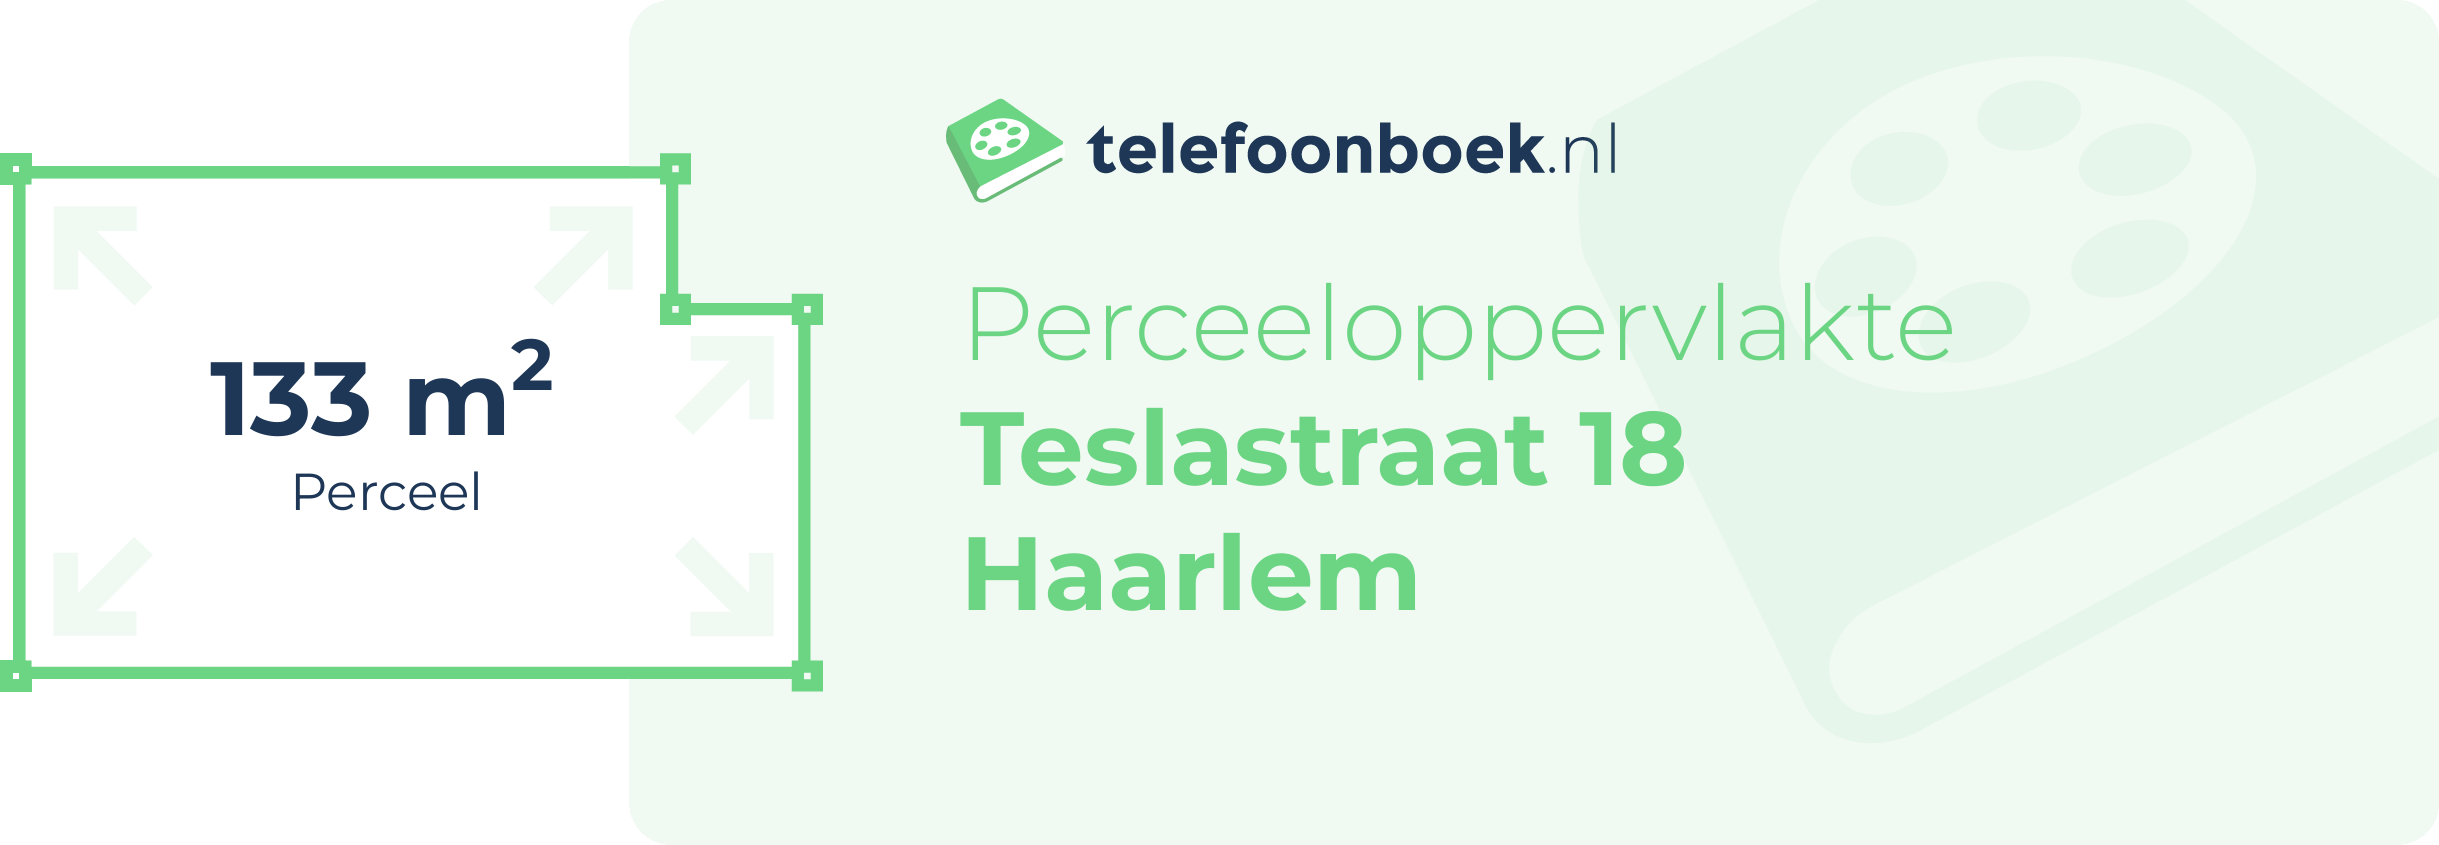 Perceeloppervlakte Teslastraat 18 Haarlem